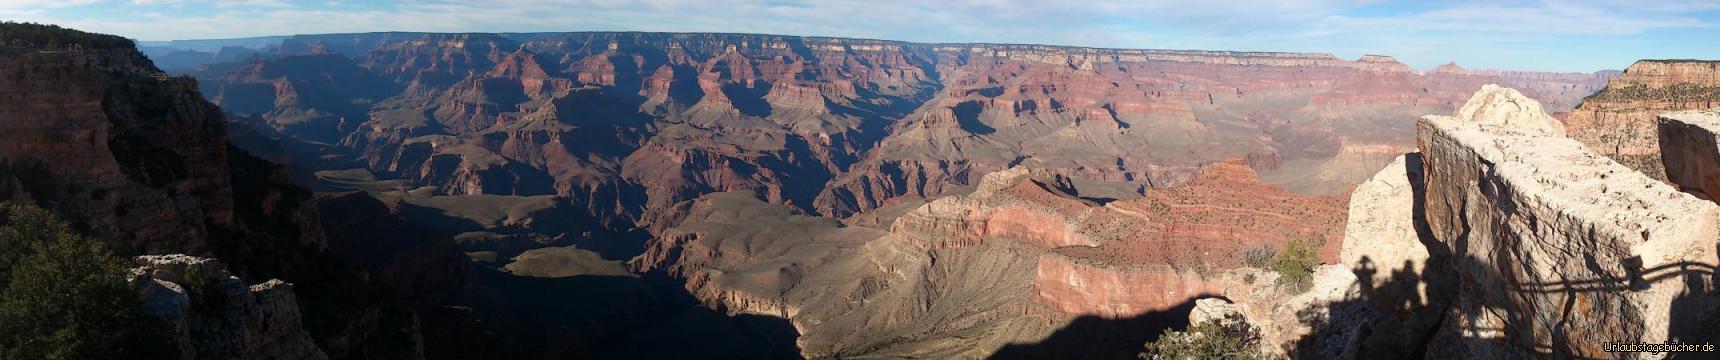 Mather Point: mit seinem Panoramablick auf den Grand Canyon und direkt am Besucherzentrum gelegen, ist der Mather Point einer der meistbesuchten Orte im Grand Canyon National Park